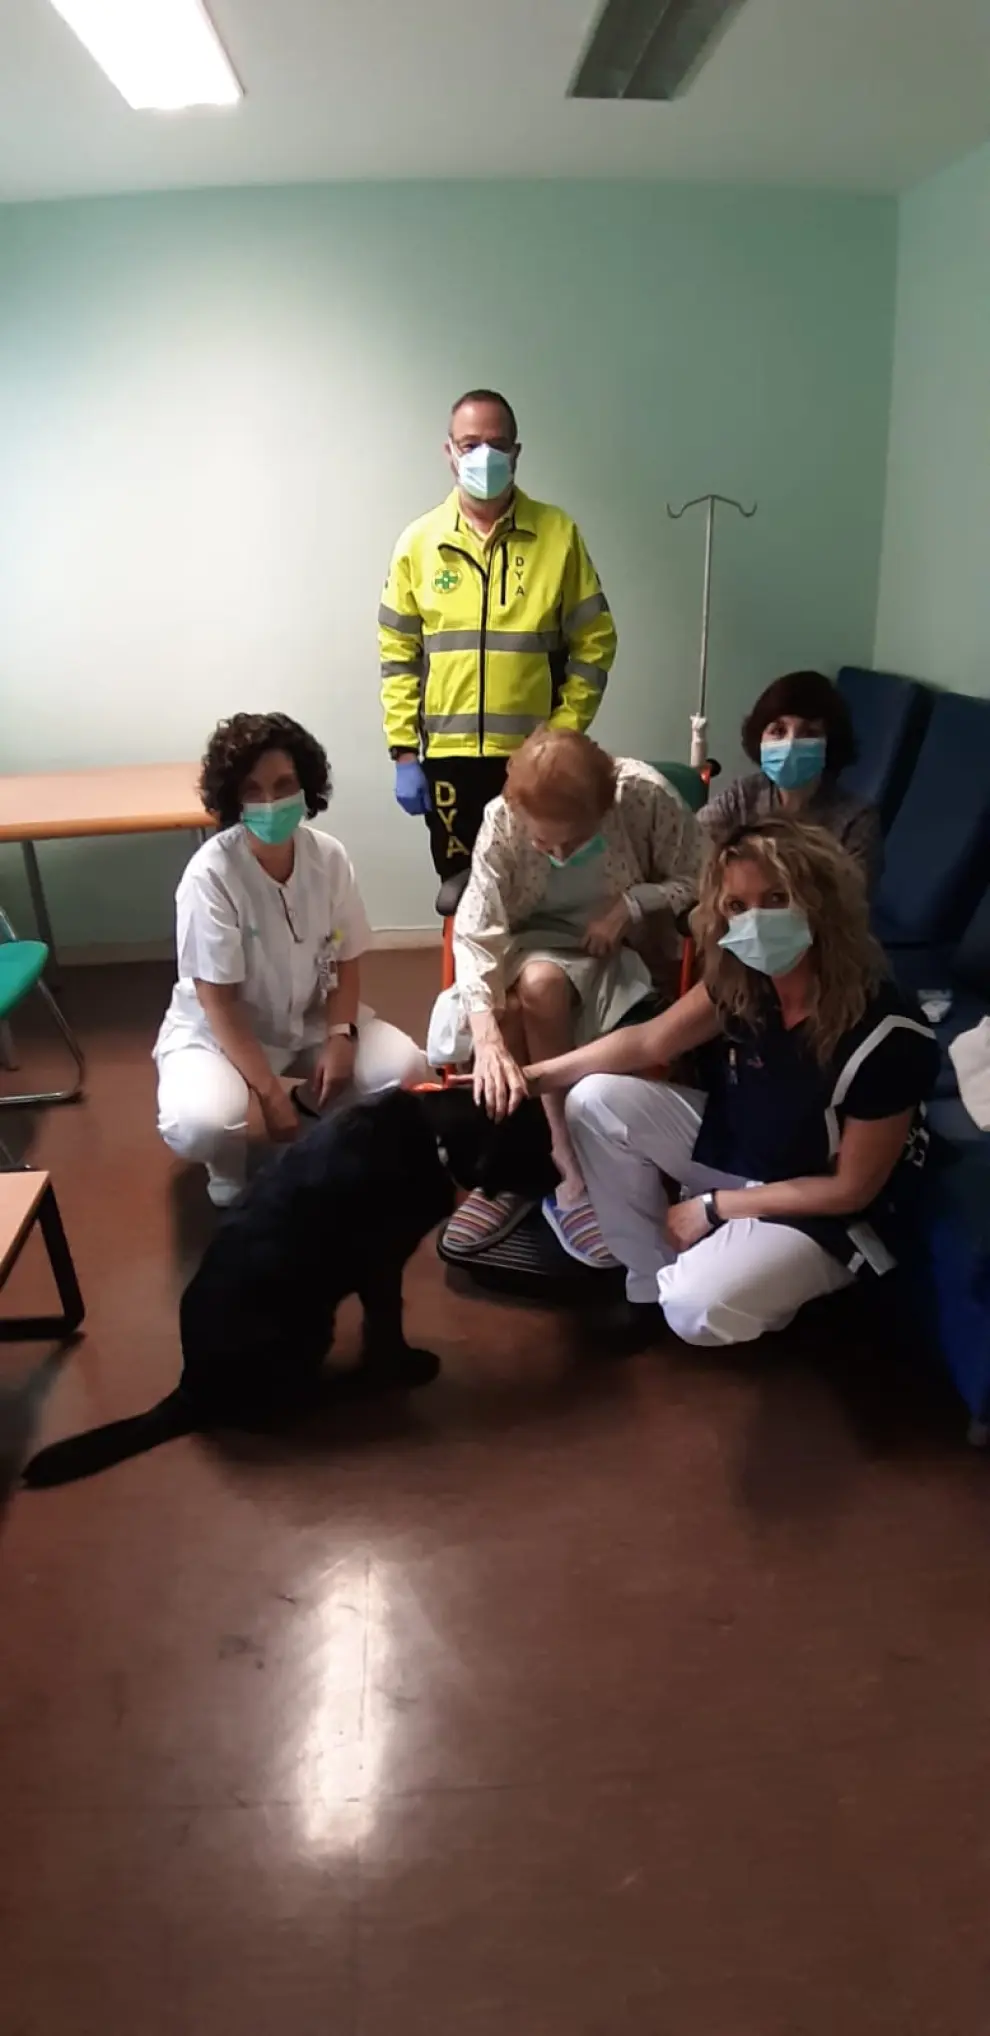 Reencuentro de Soledad y su perro guía en el hospital Miguel Servet